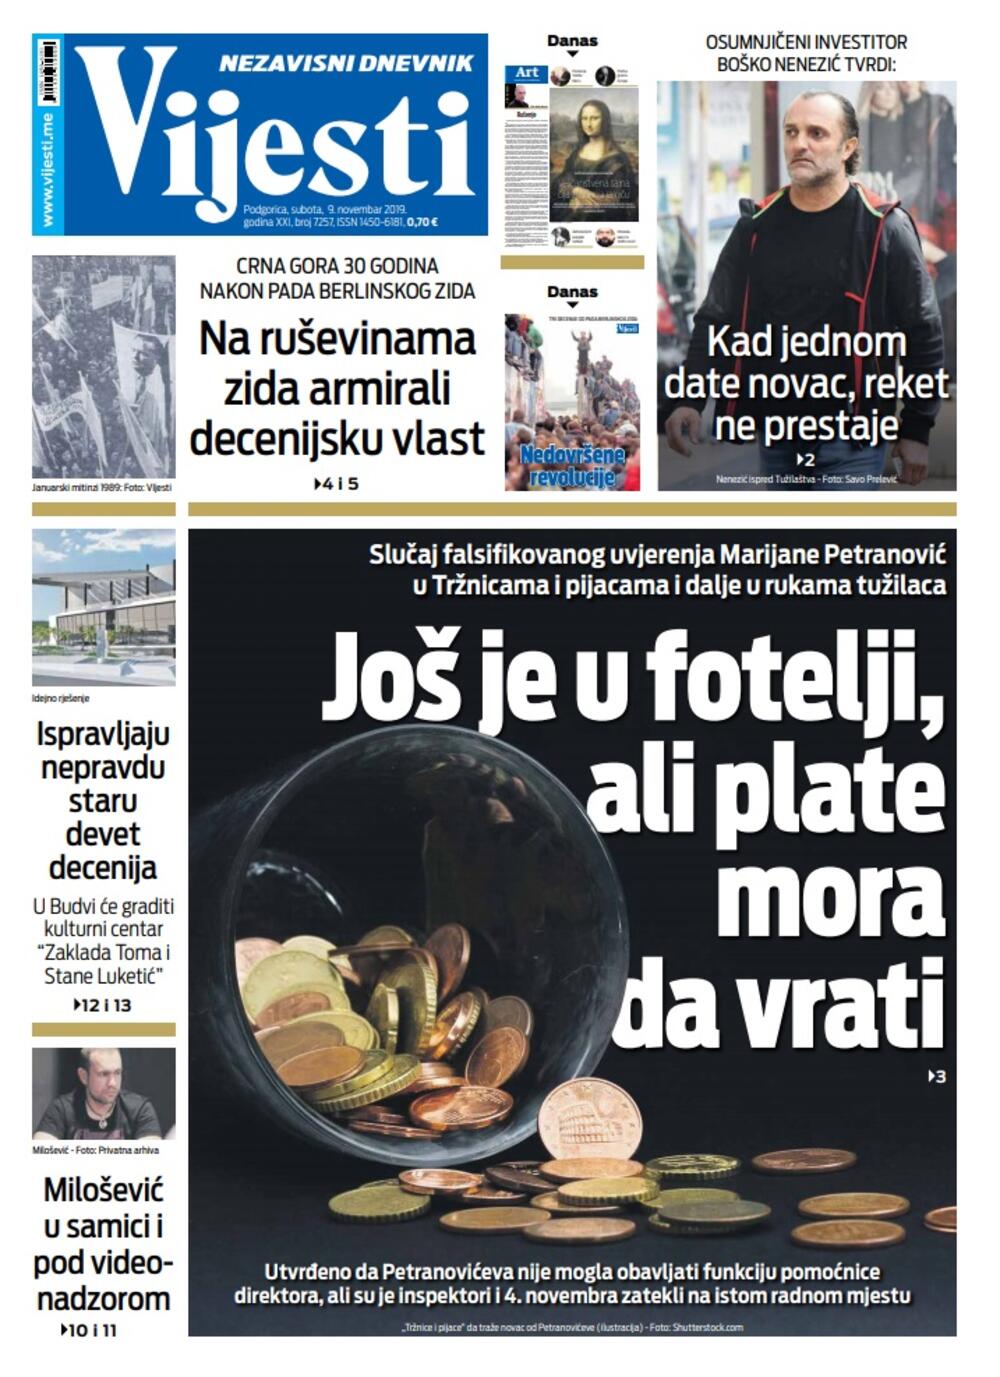 Naslovna strana "Vijesti" za 9. novembar 2019., Foto: Vijesti